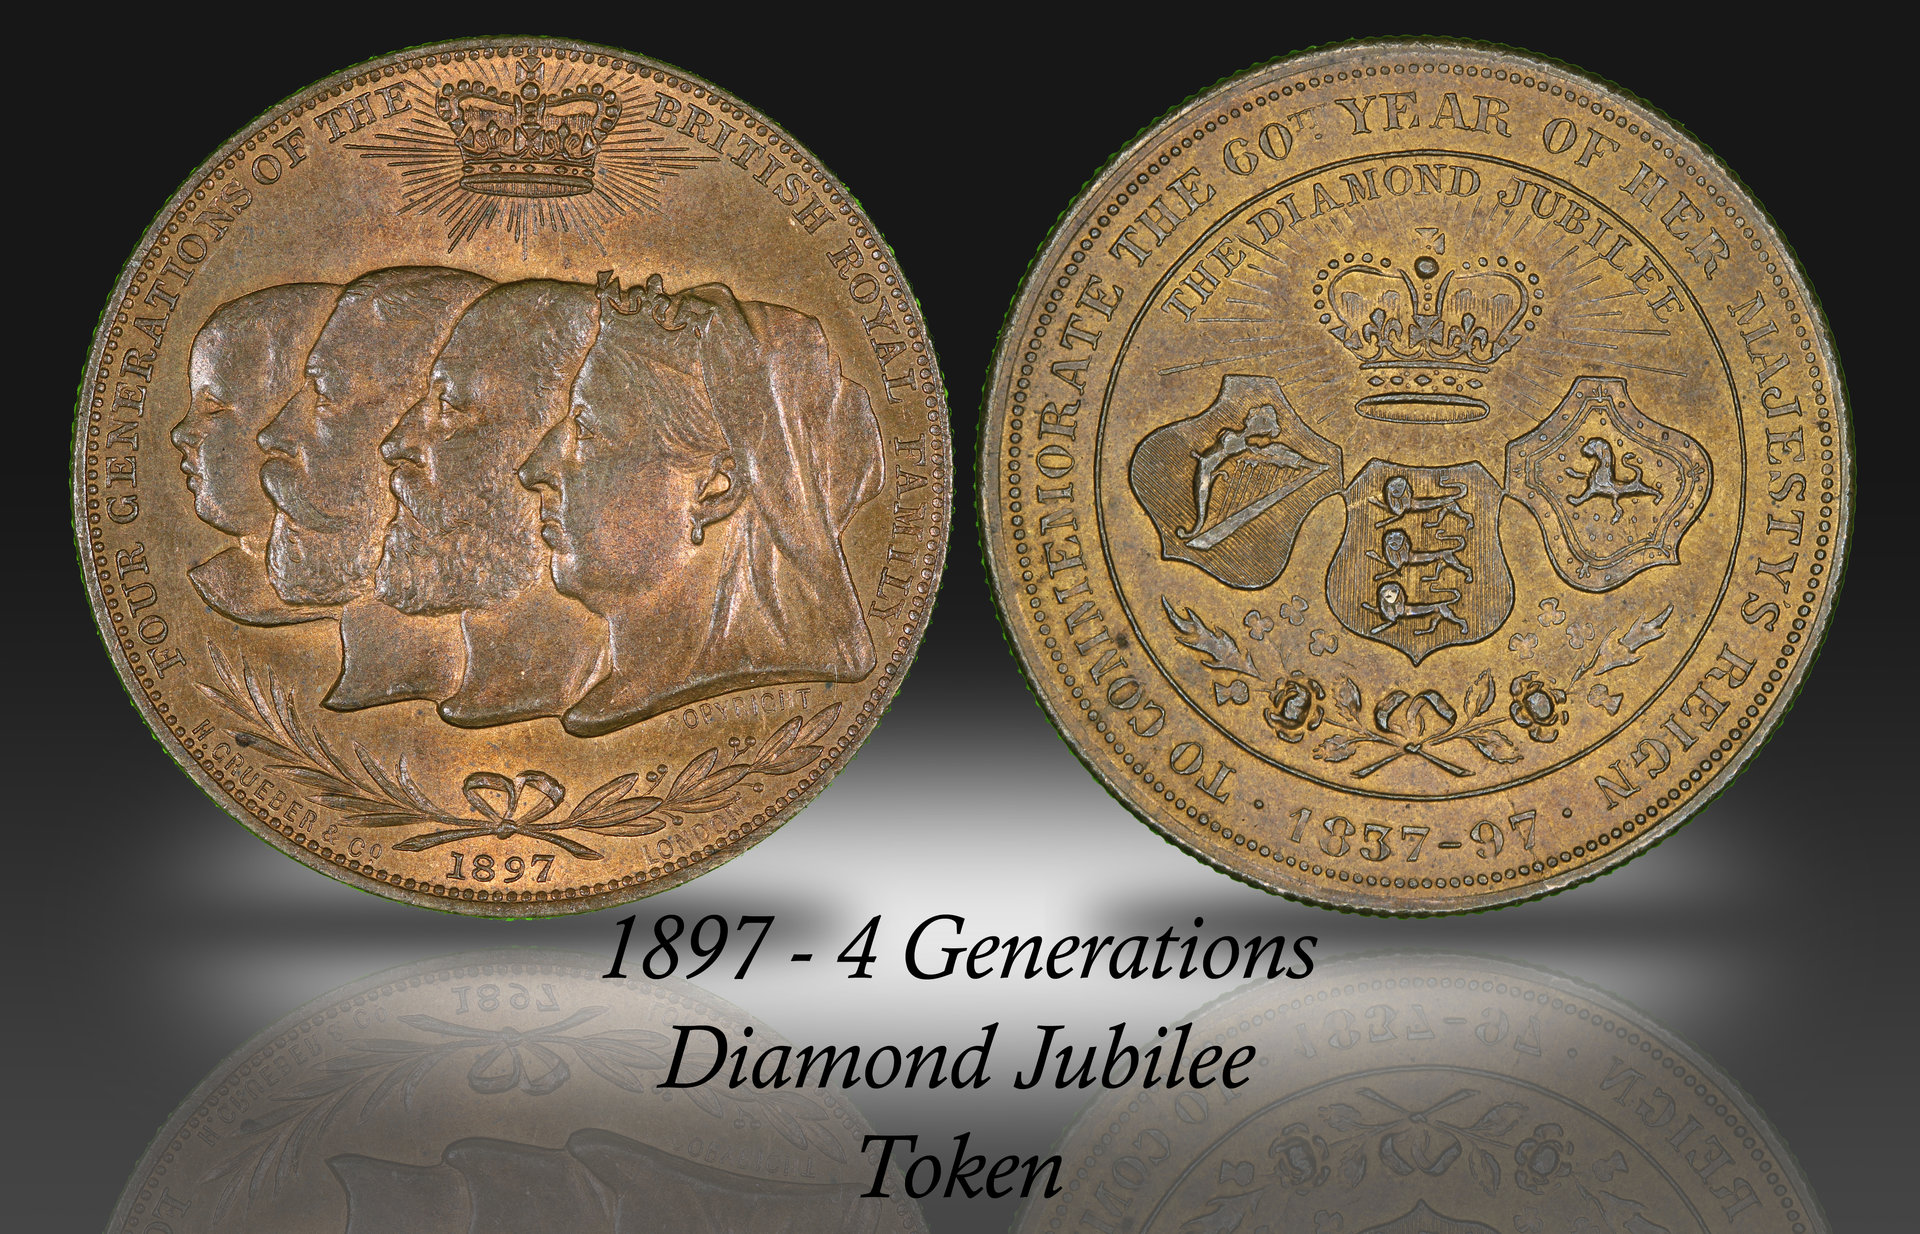 4 generations diamond jubilee.jpg